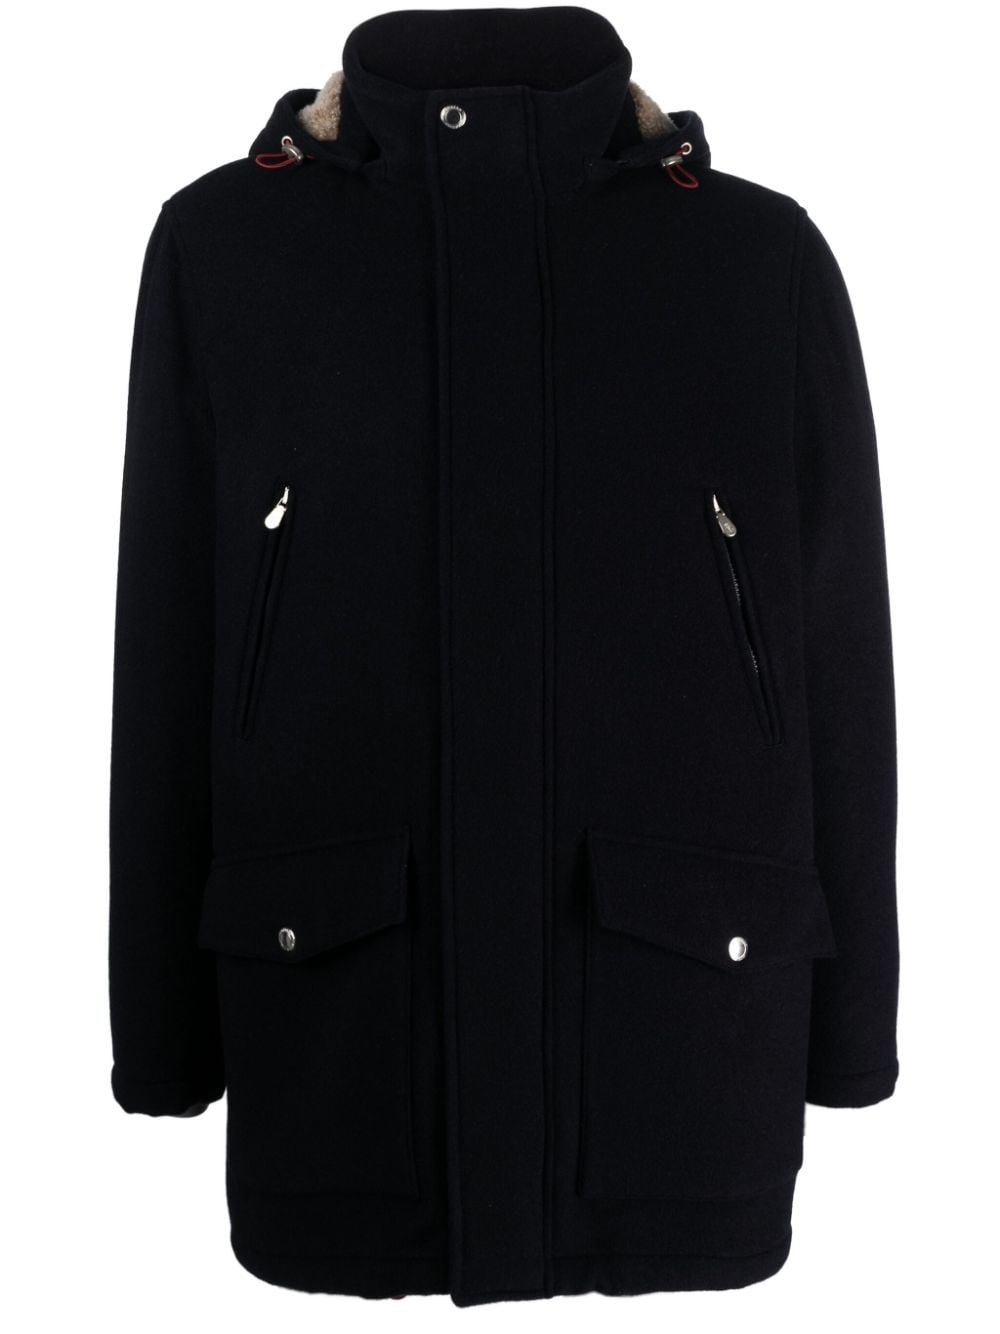 cashmere hooded parka jacket - 1